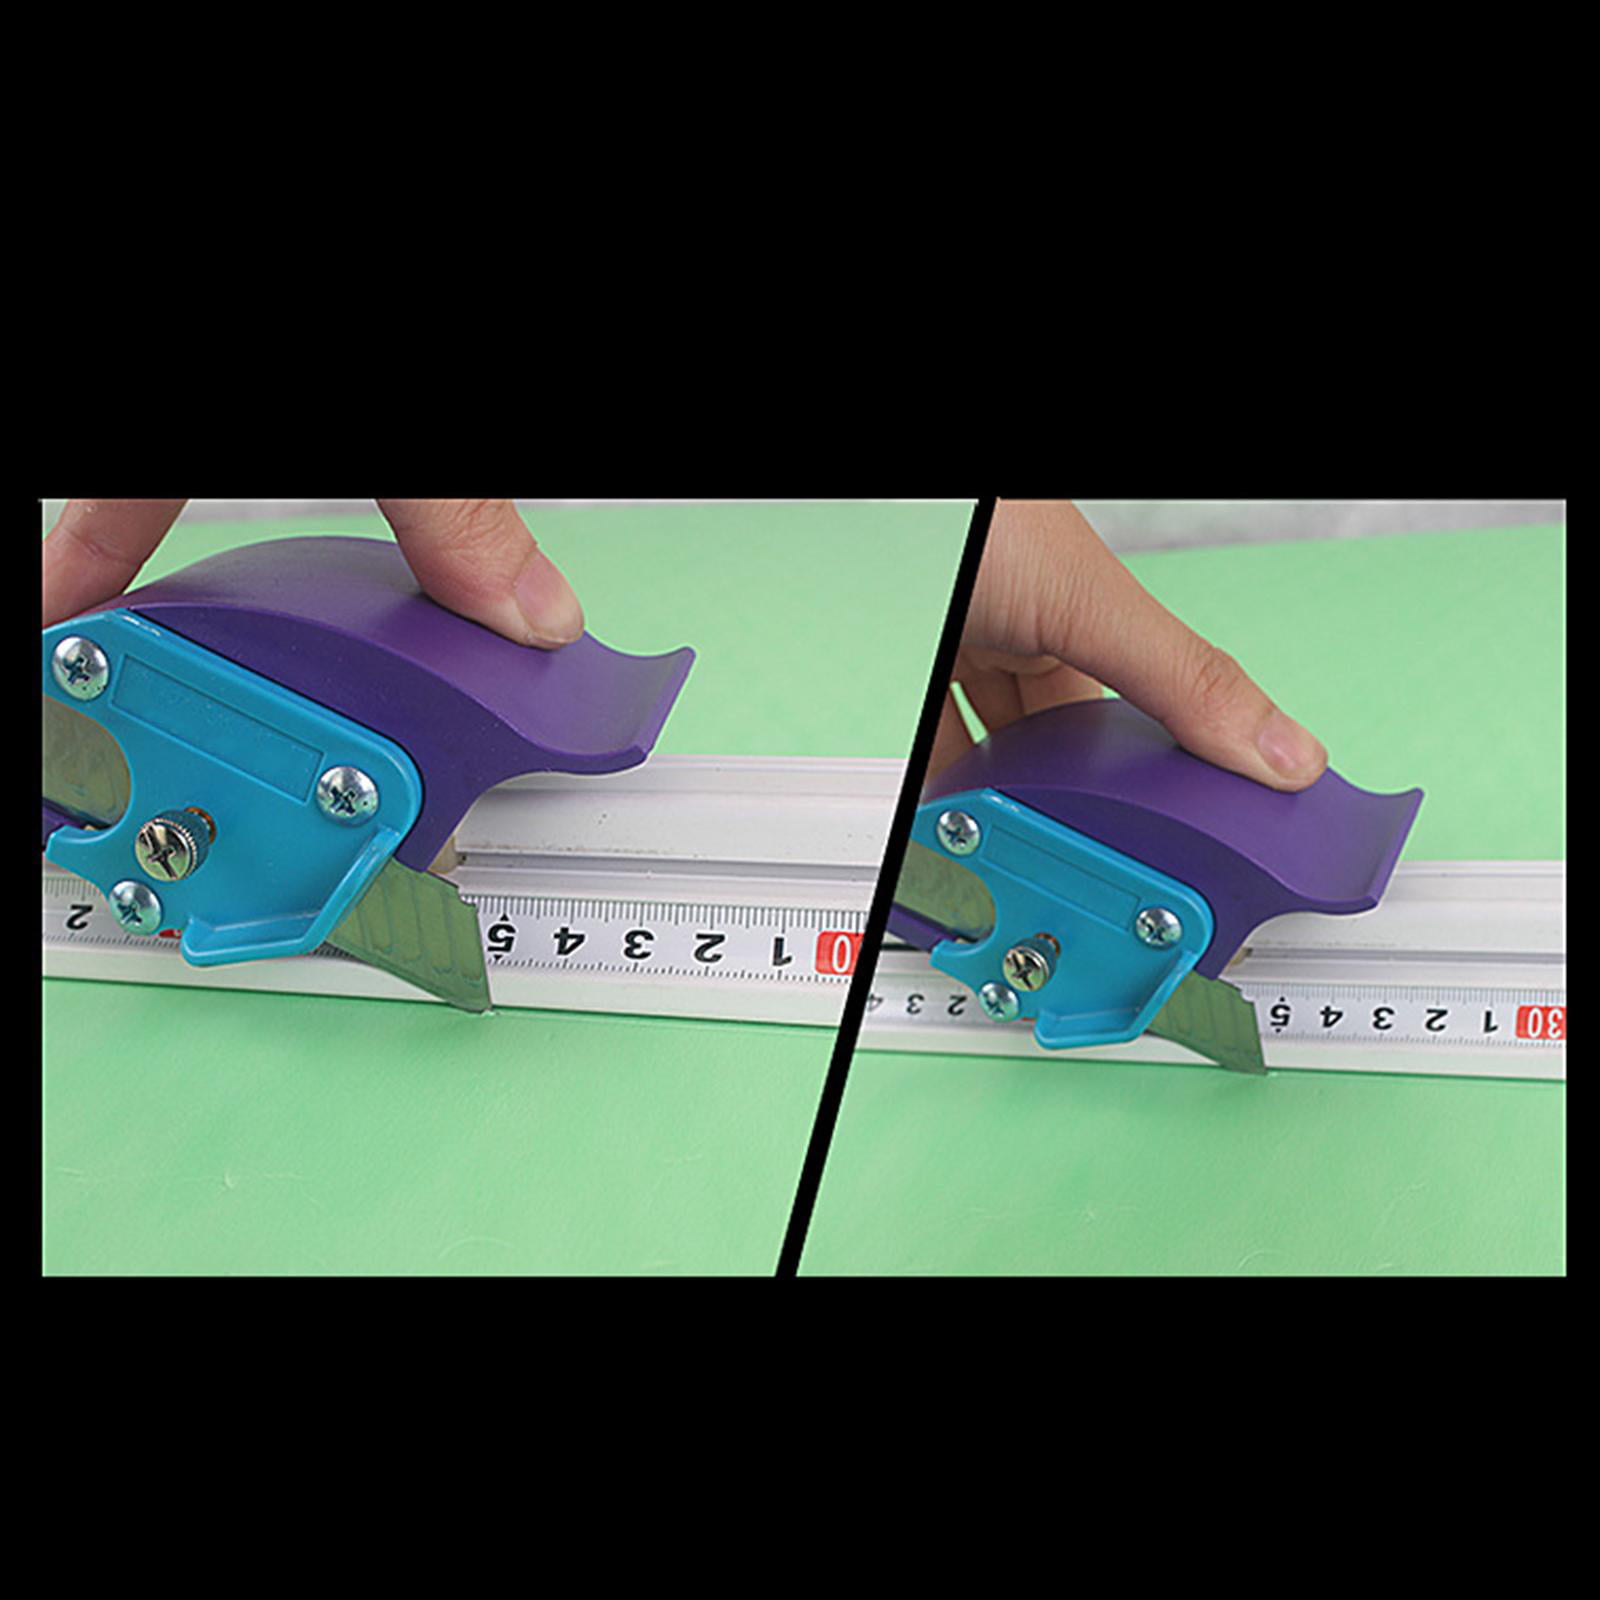 Manual Sliding Cutter Ruler For Paper - Inspire Uplift